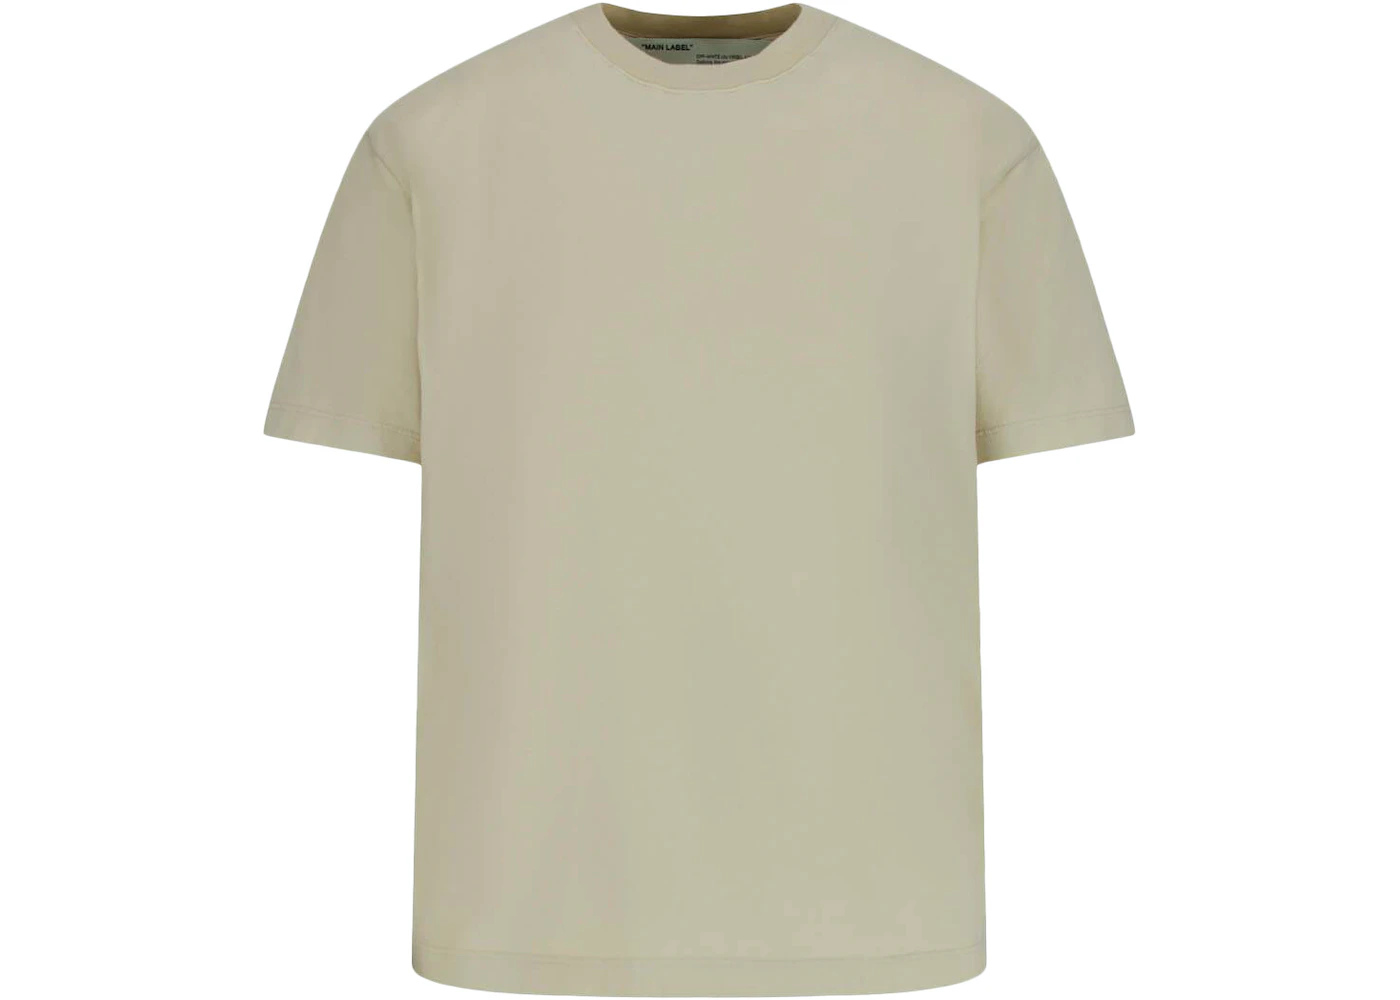 OFF-WHITE Casual Arrows T-Shirt Ecru/Ecru - US